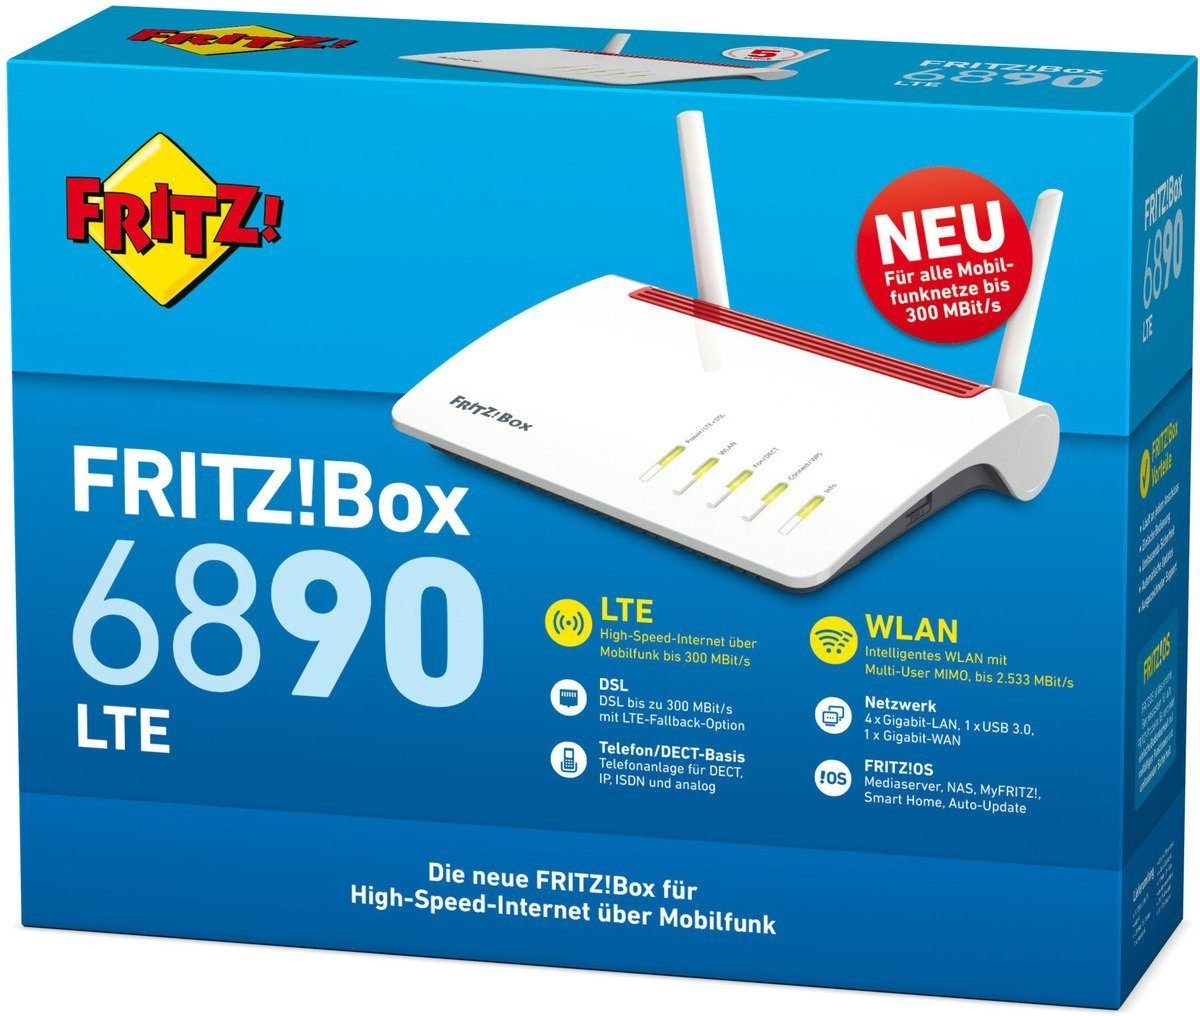 WLAN-Router LTE FRITZ!Box 6890 AVM